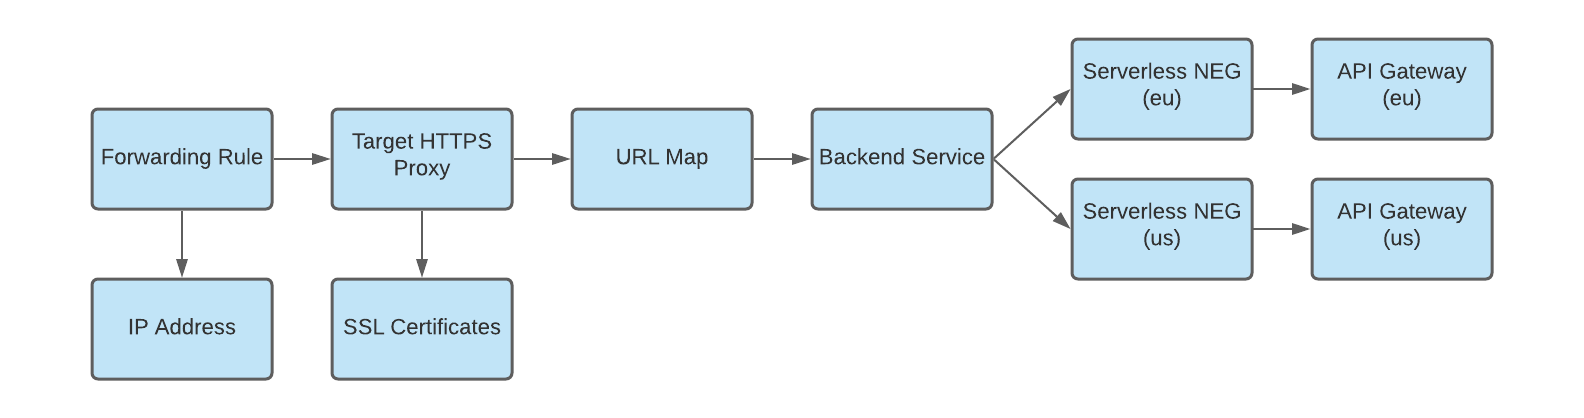 diagrama de NEG sin servidores como backend para puertas de enlace multirregionales